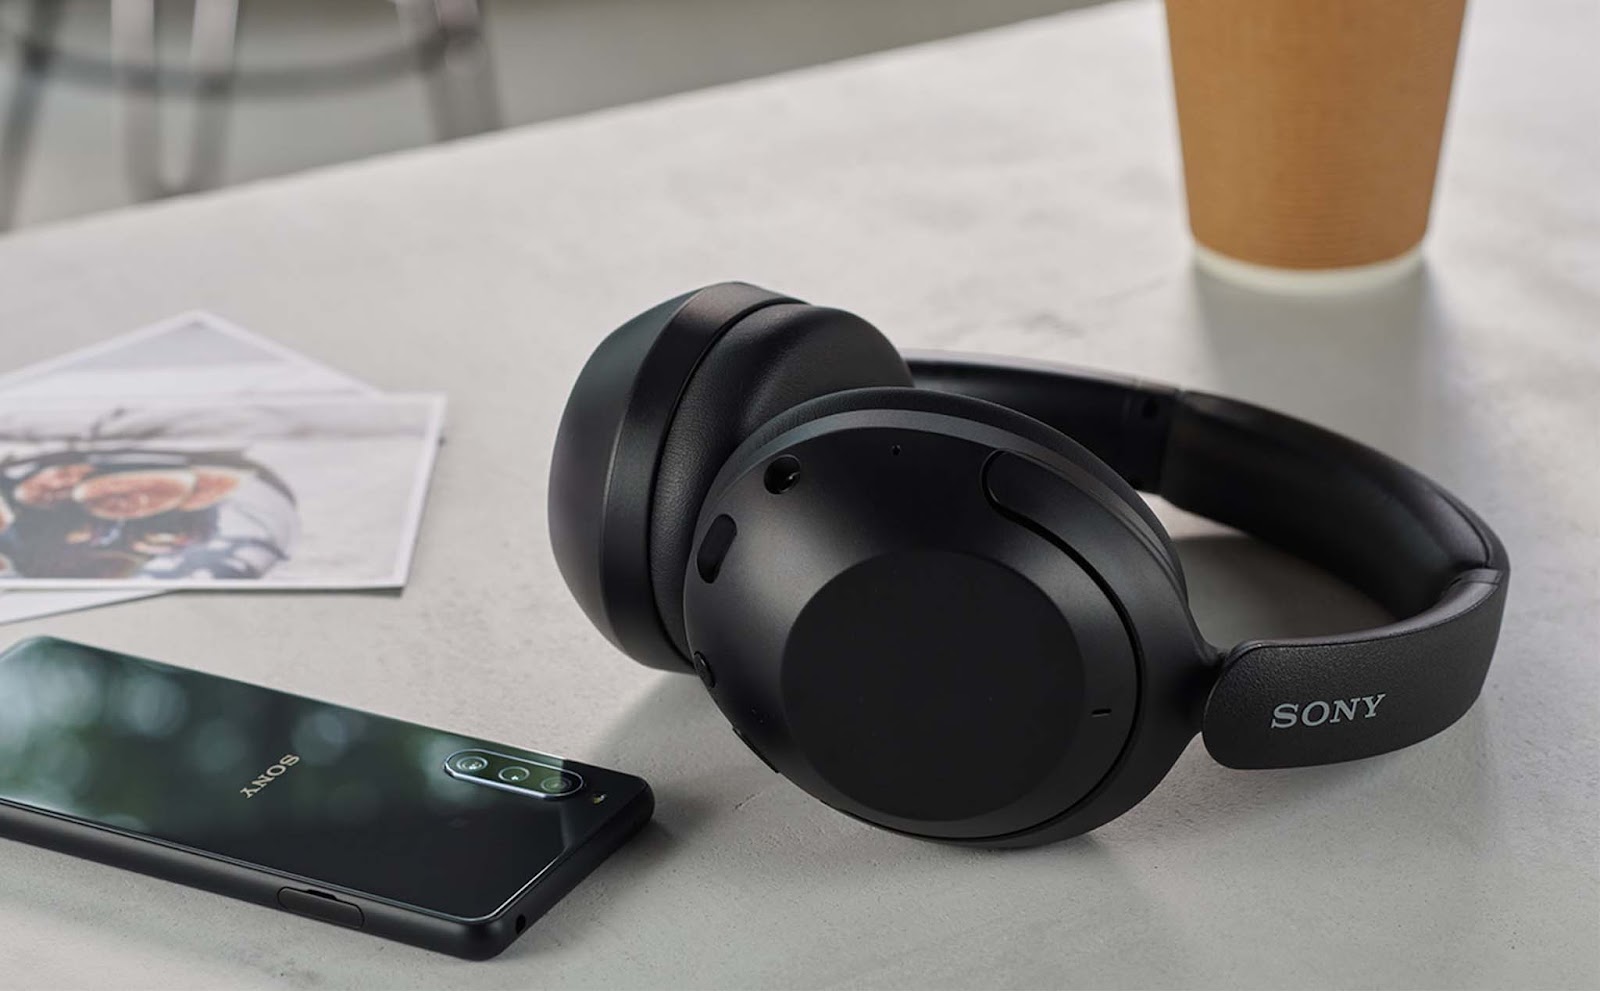 Sony ra mắt tai nghe không dây, có chống ồn chủ động, pin nghe 30 tiếng, giá dưới 5 triệu đồng - Ảnh 1.